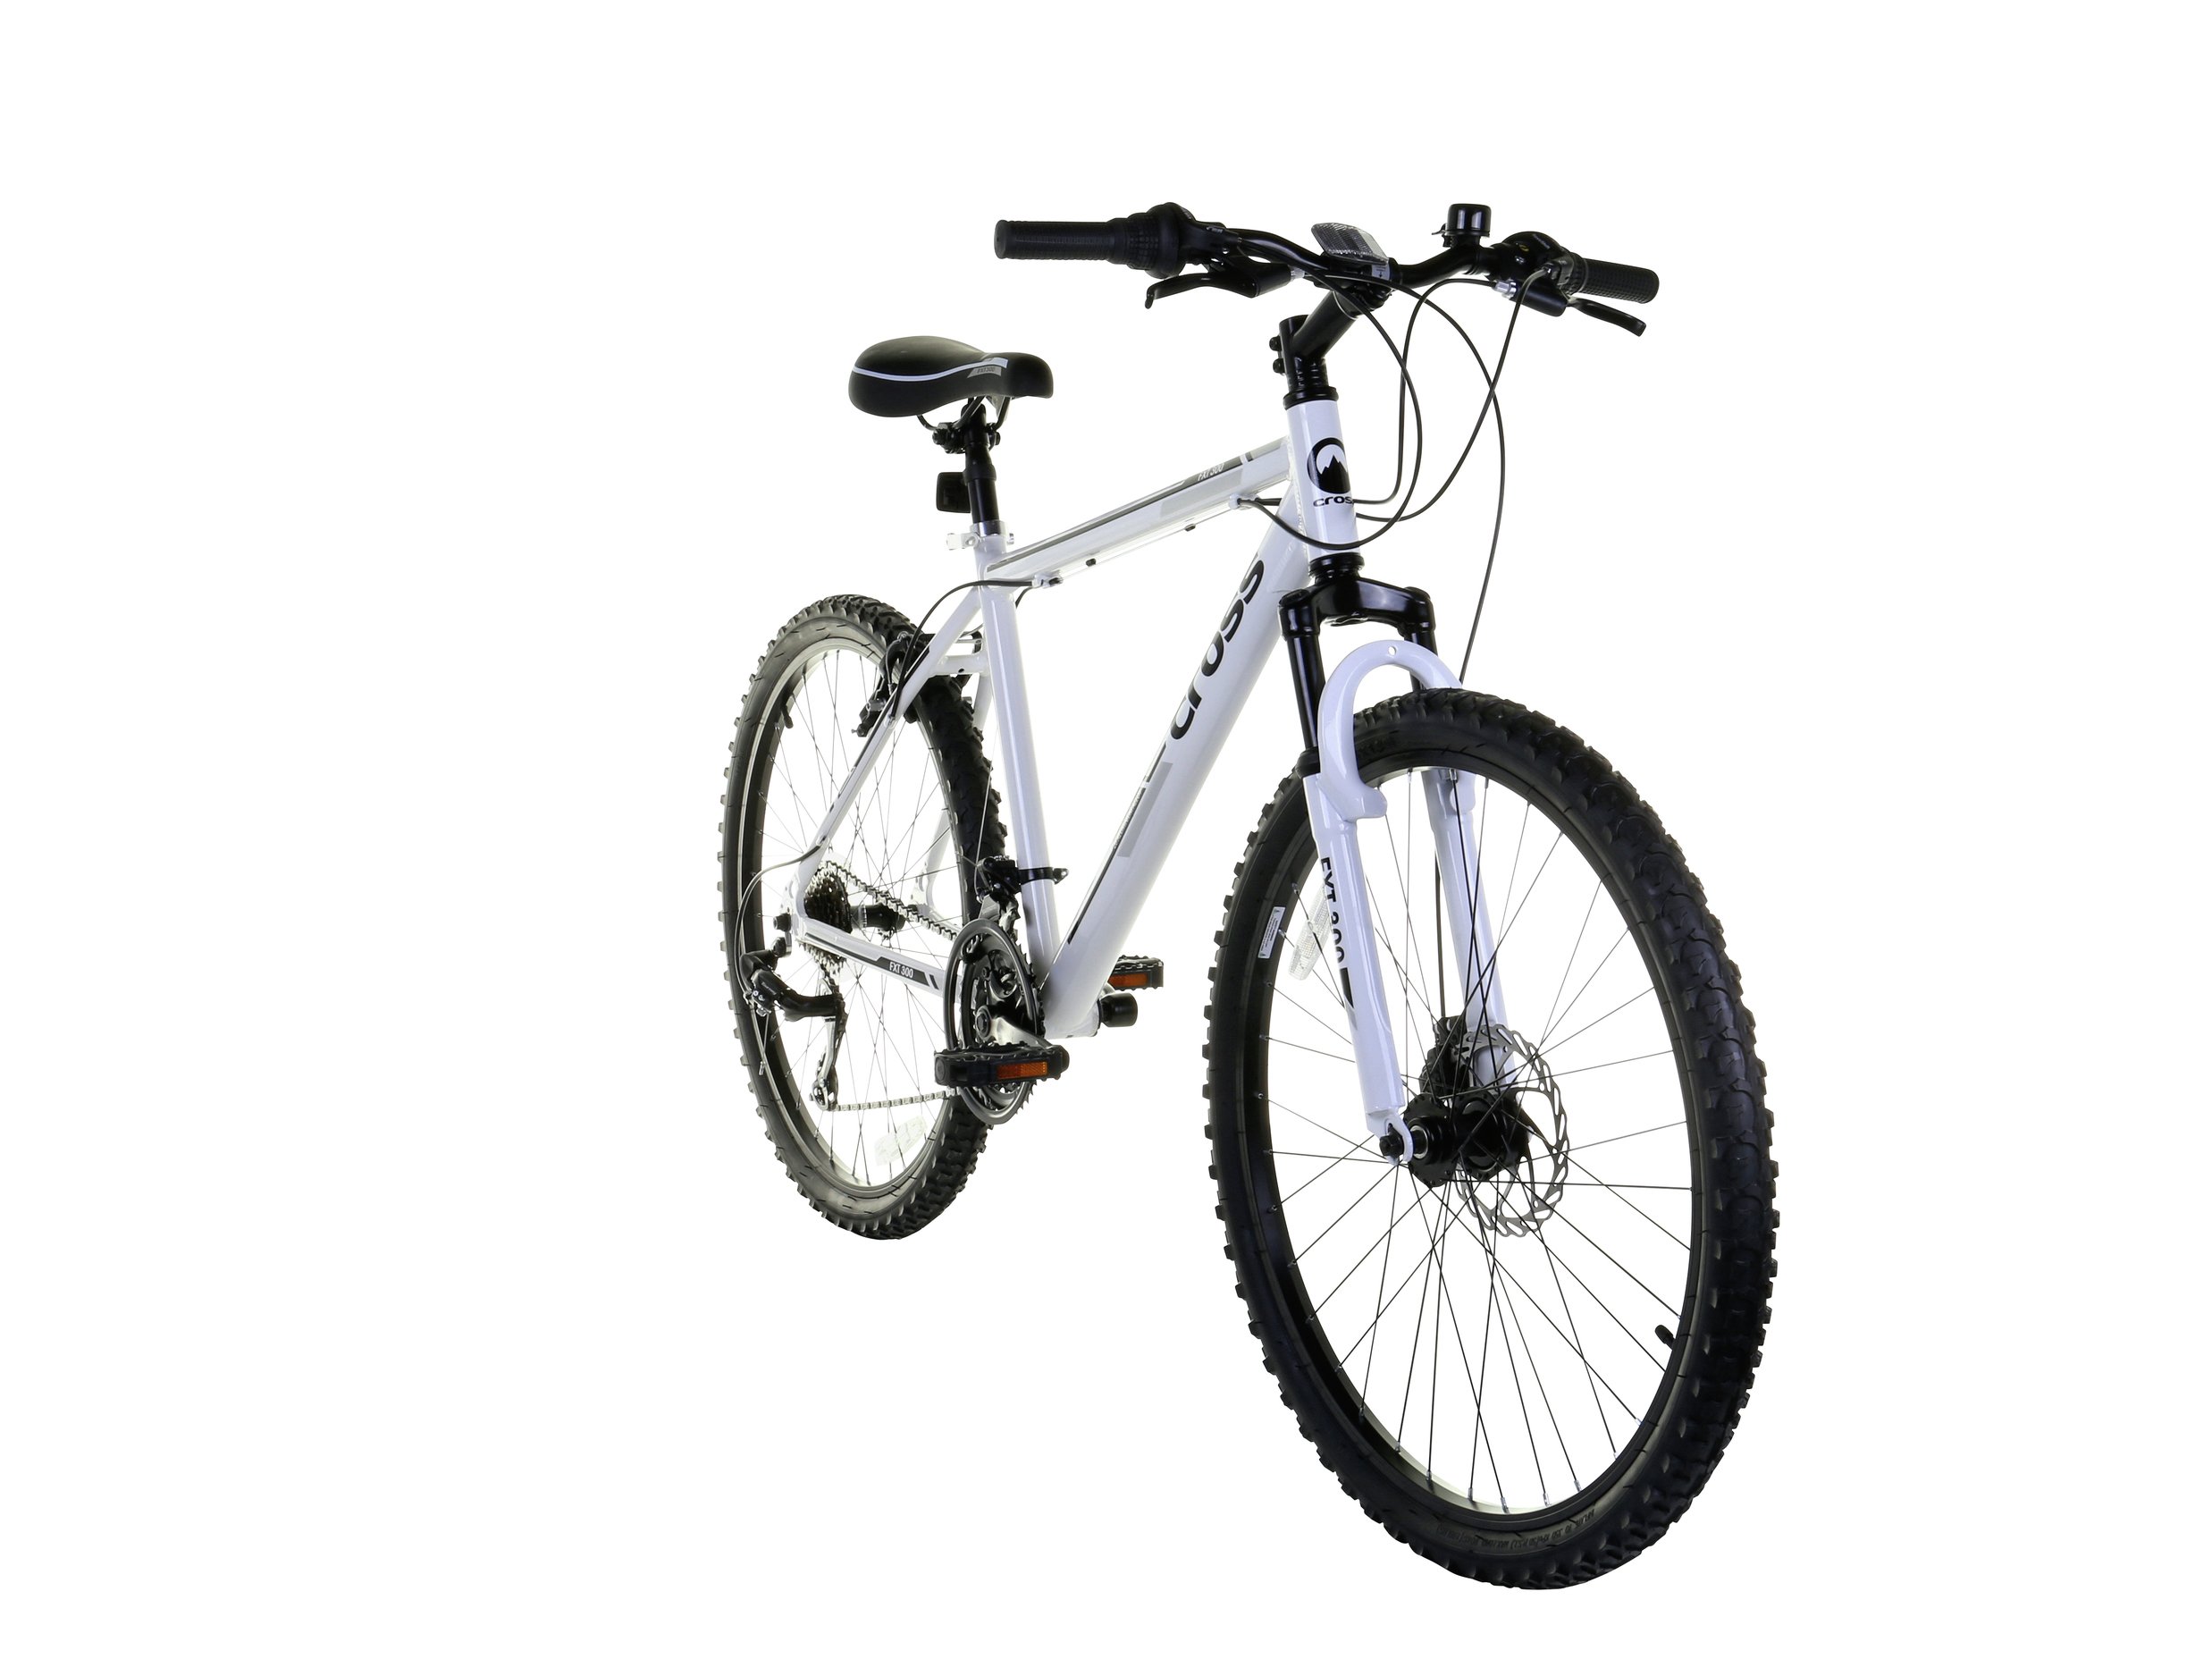 cross fxt30 26 inch wheel size mens mountain bike